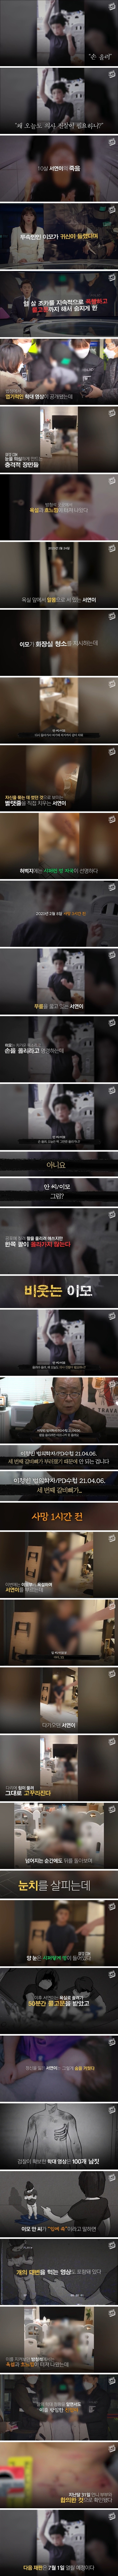 10살 조카 ',물고문 살해', 이모부부 ',학대 동영상', 법정서 공개.jpg